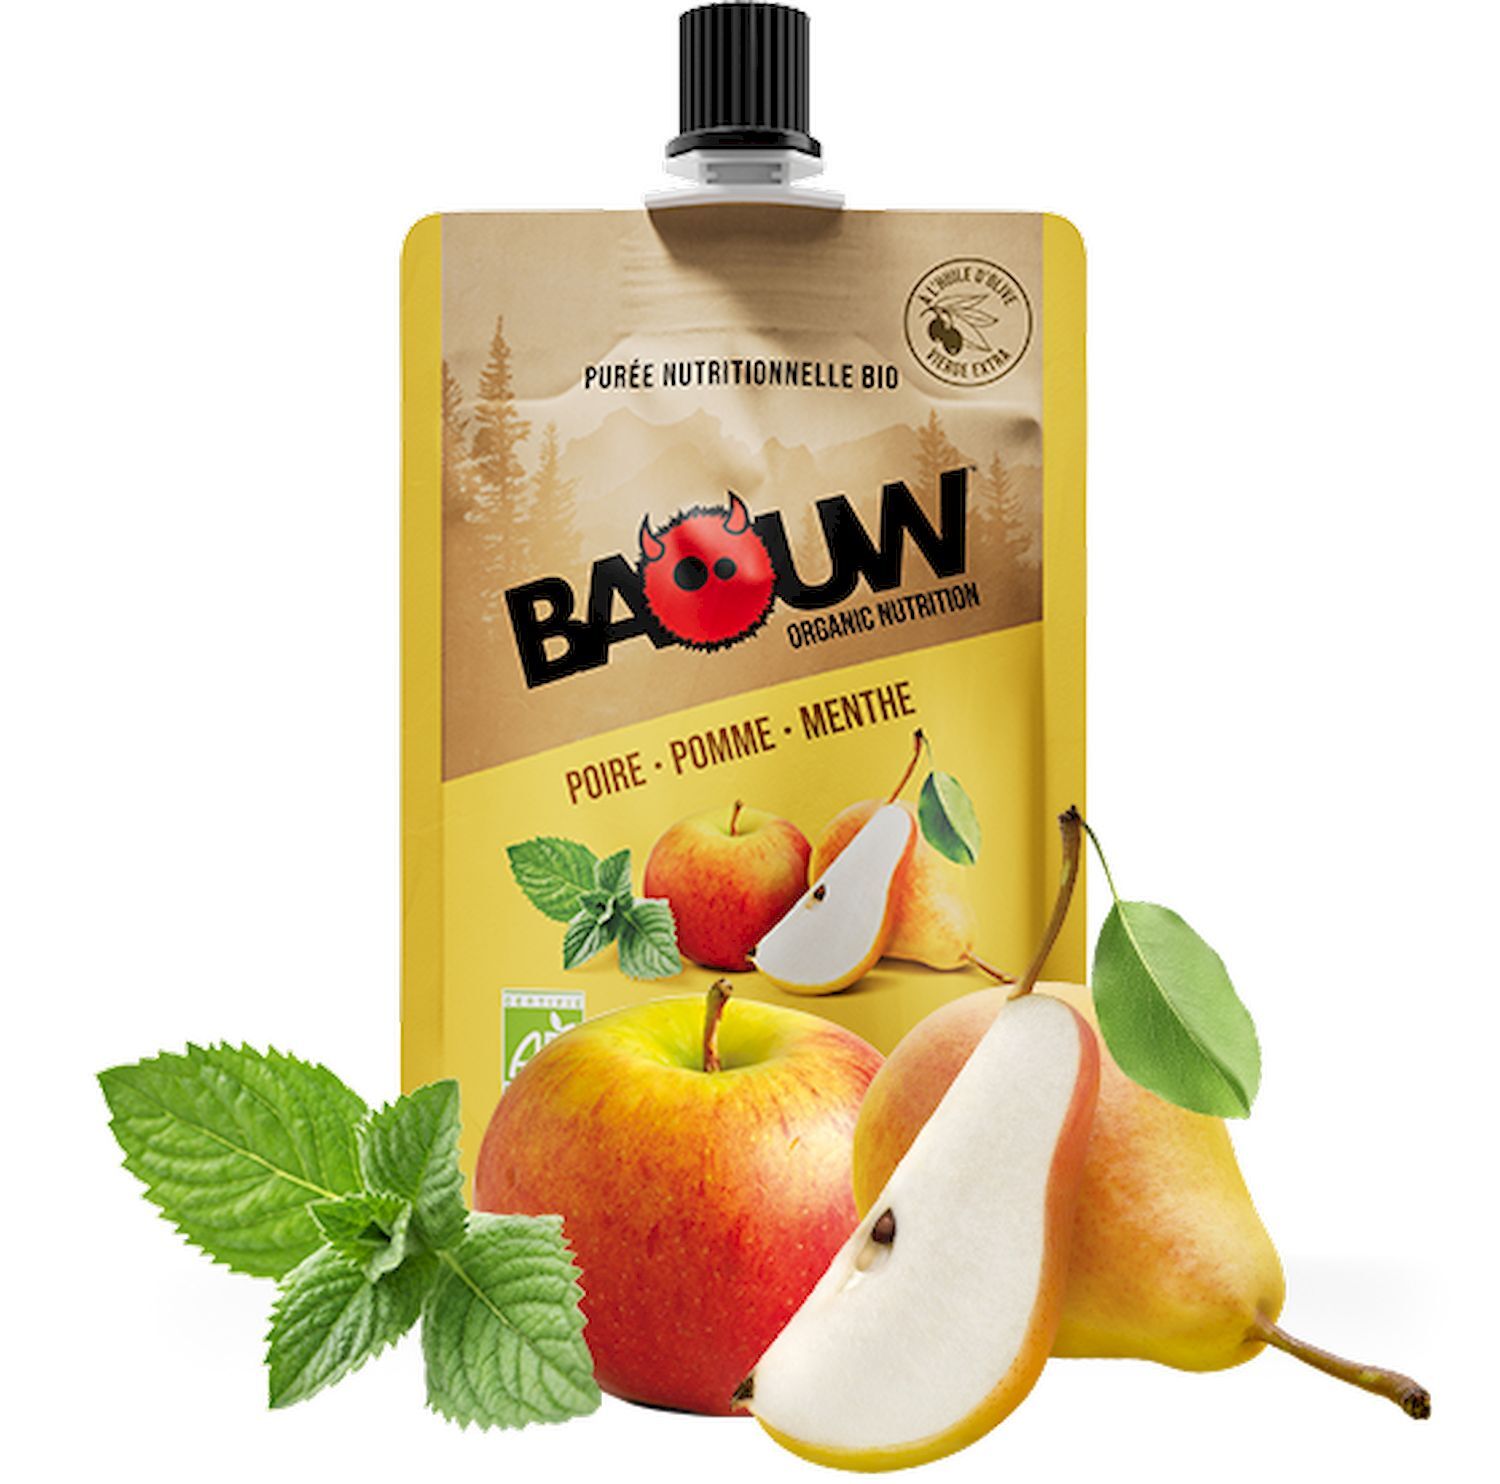 Baouw Poire-Pomme-Menthe - Gel énergétique